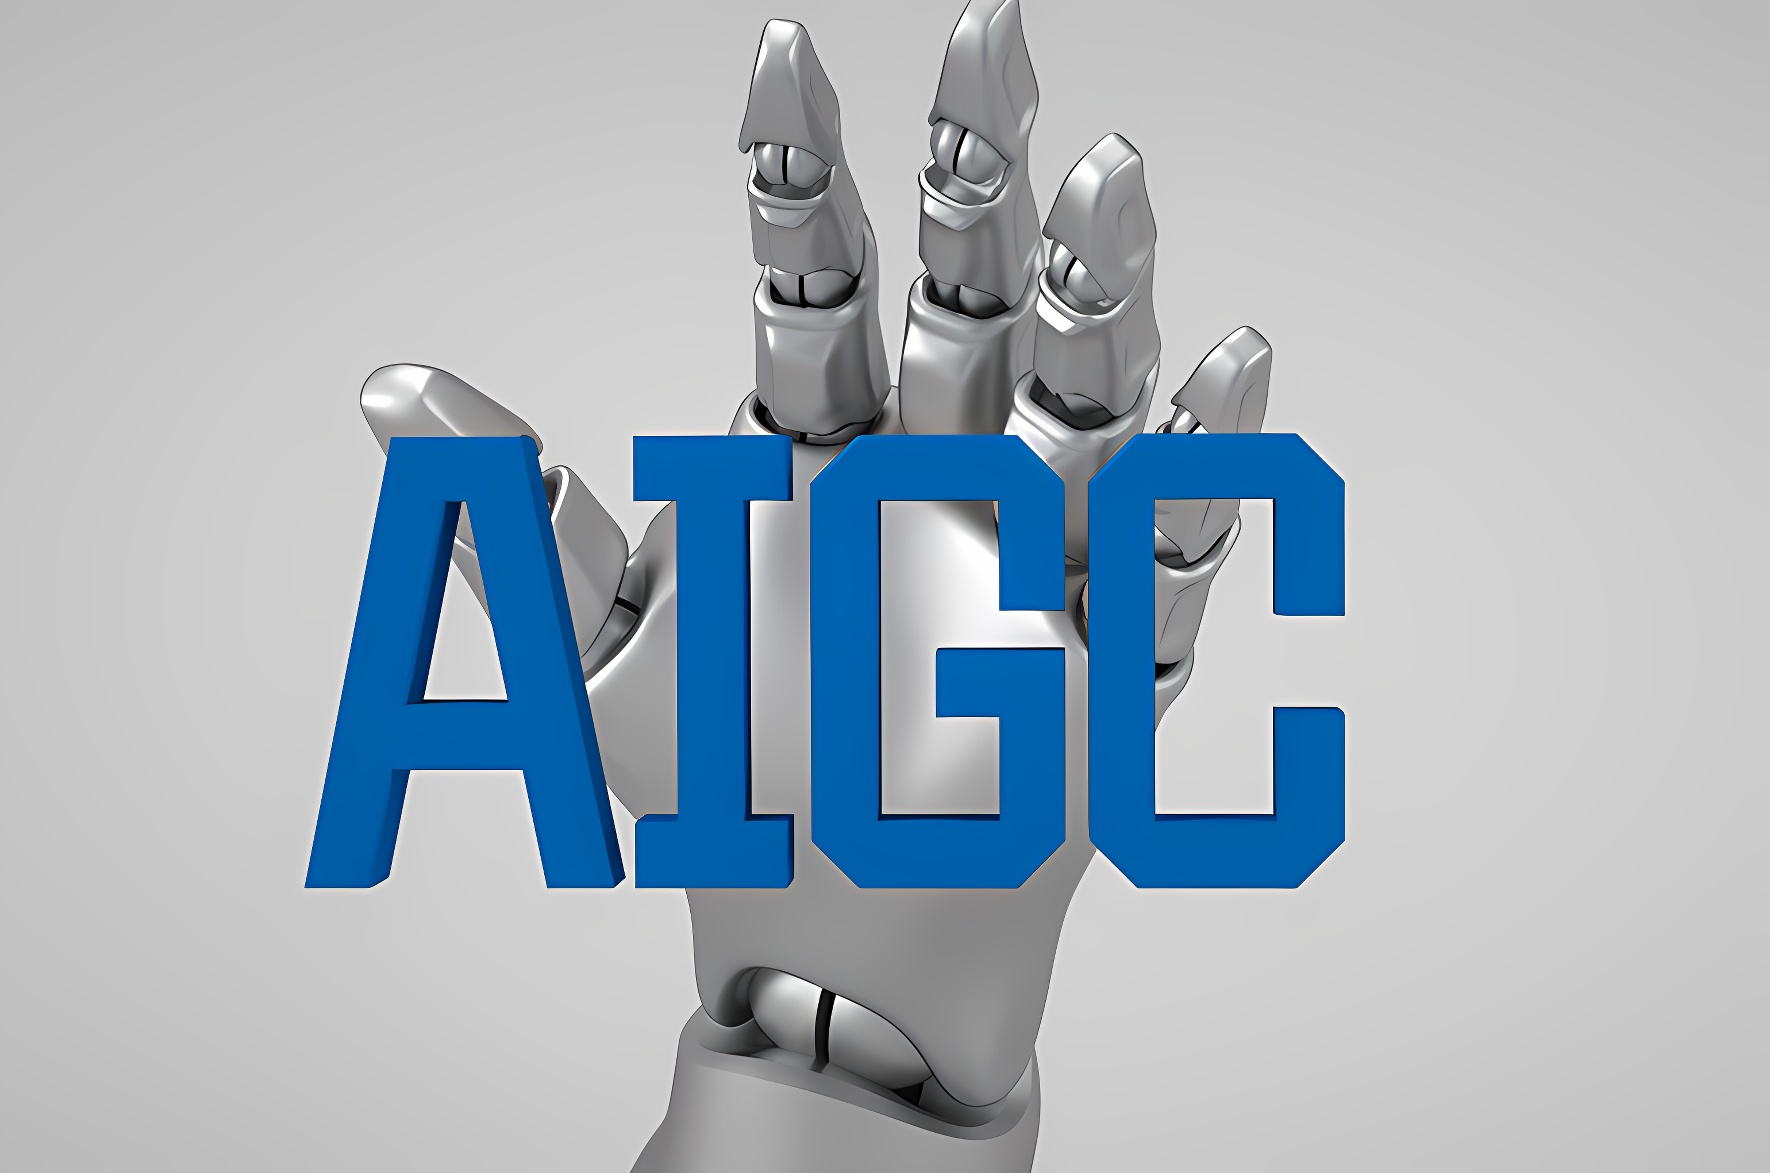 图片展示了一个银色的机械手指触碰着蓝色的“AI”字样，背景为灰色，可能象征人工智能技术。